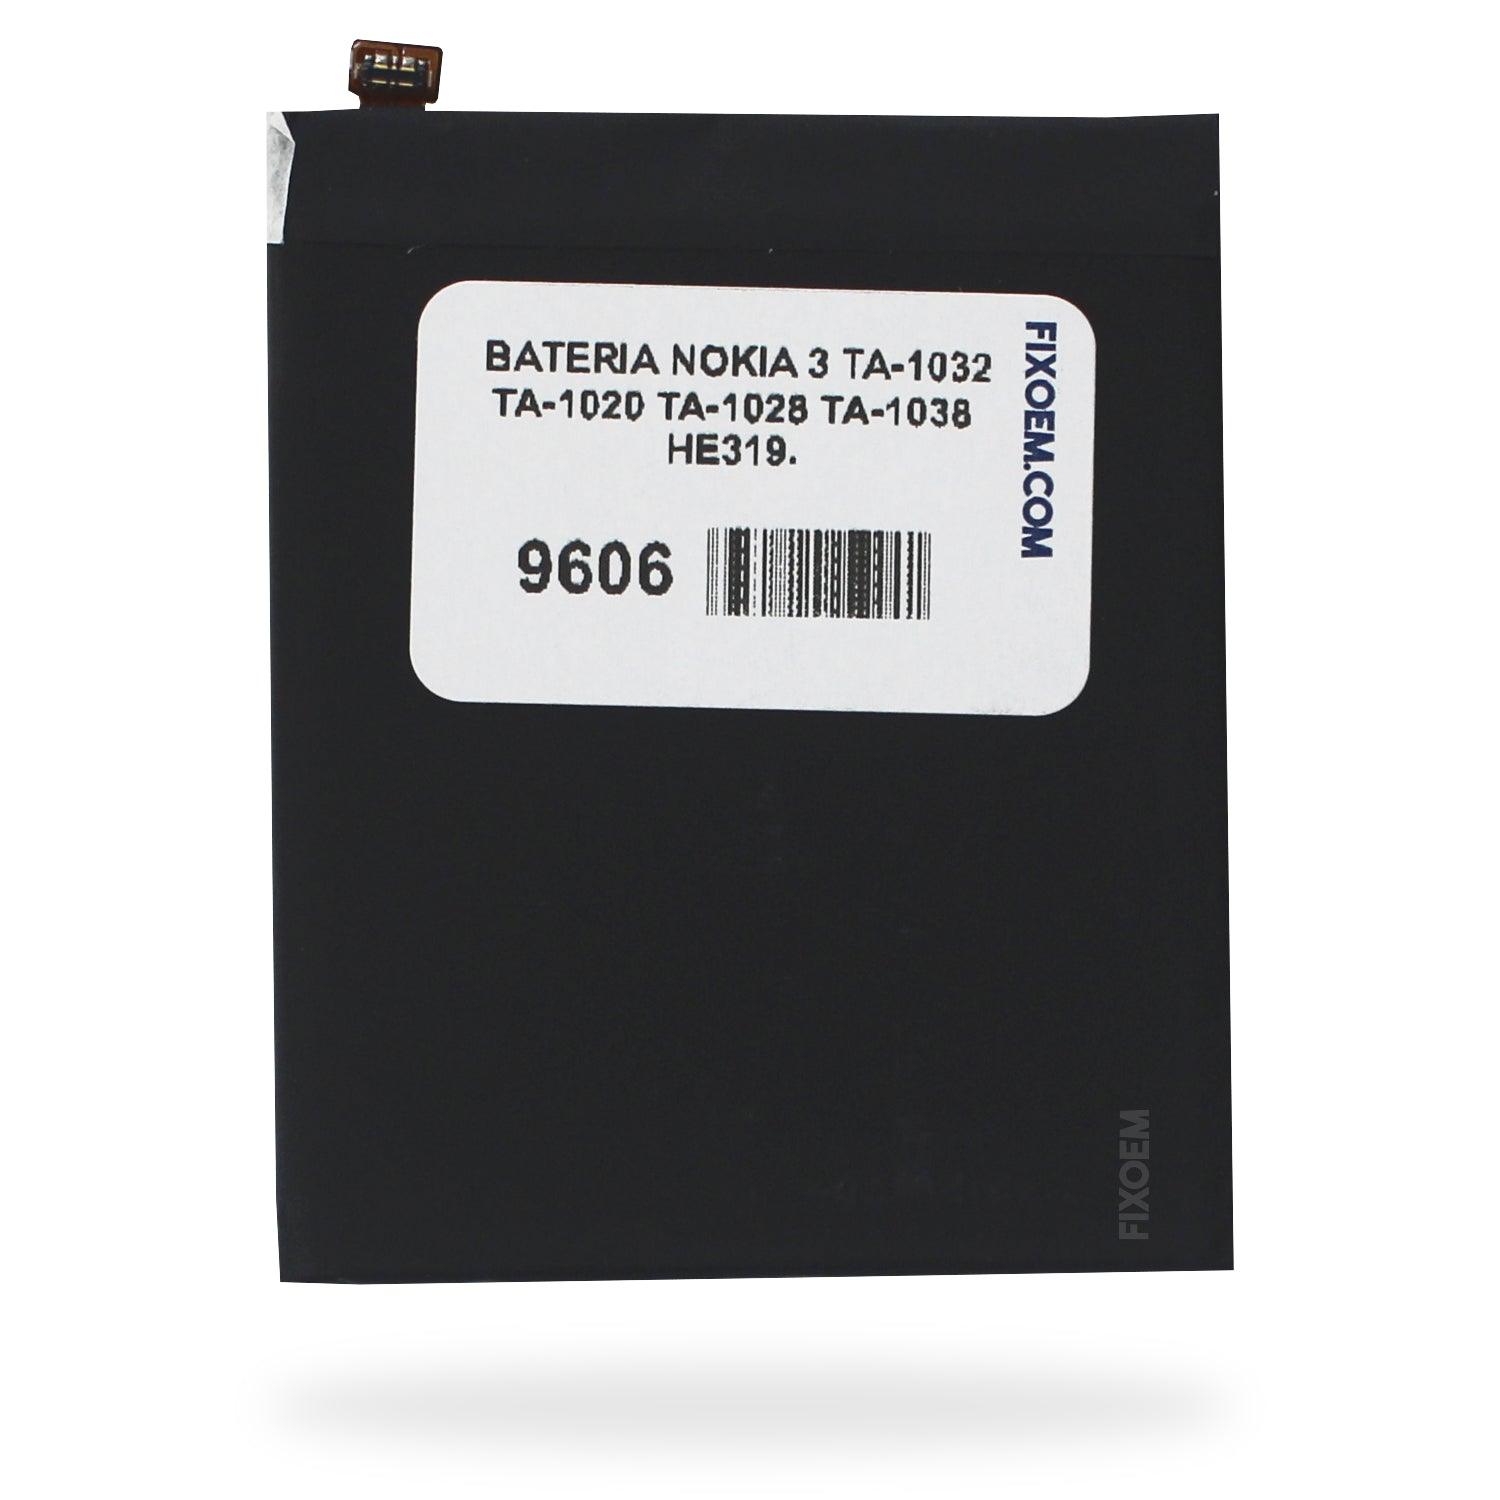 Bateria Nokia 3 Ta-1032 Ta-1020 Ta-1028 Ta-1038 He319. a solo $ 130.00 Refaccion y puestos celulares, refurbish y microelectronica.- FixOEM